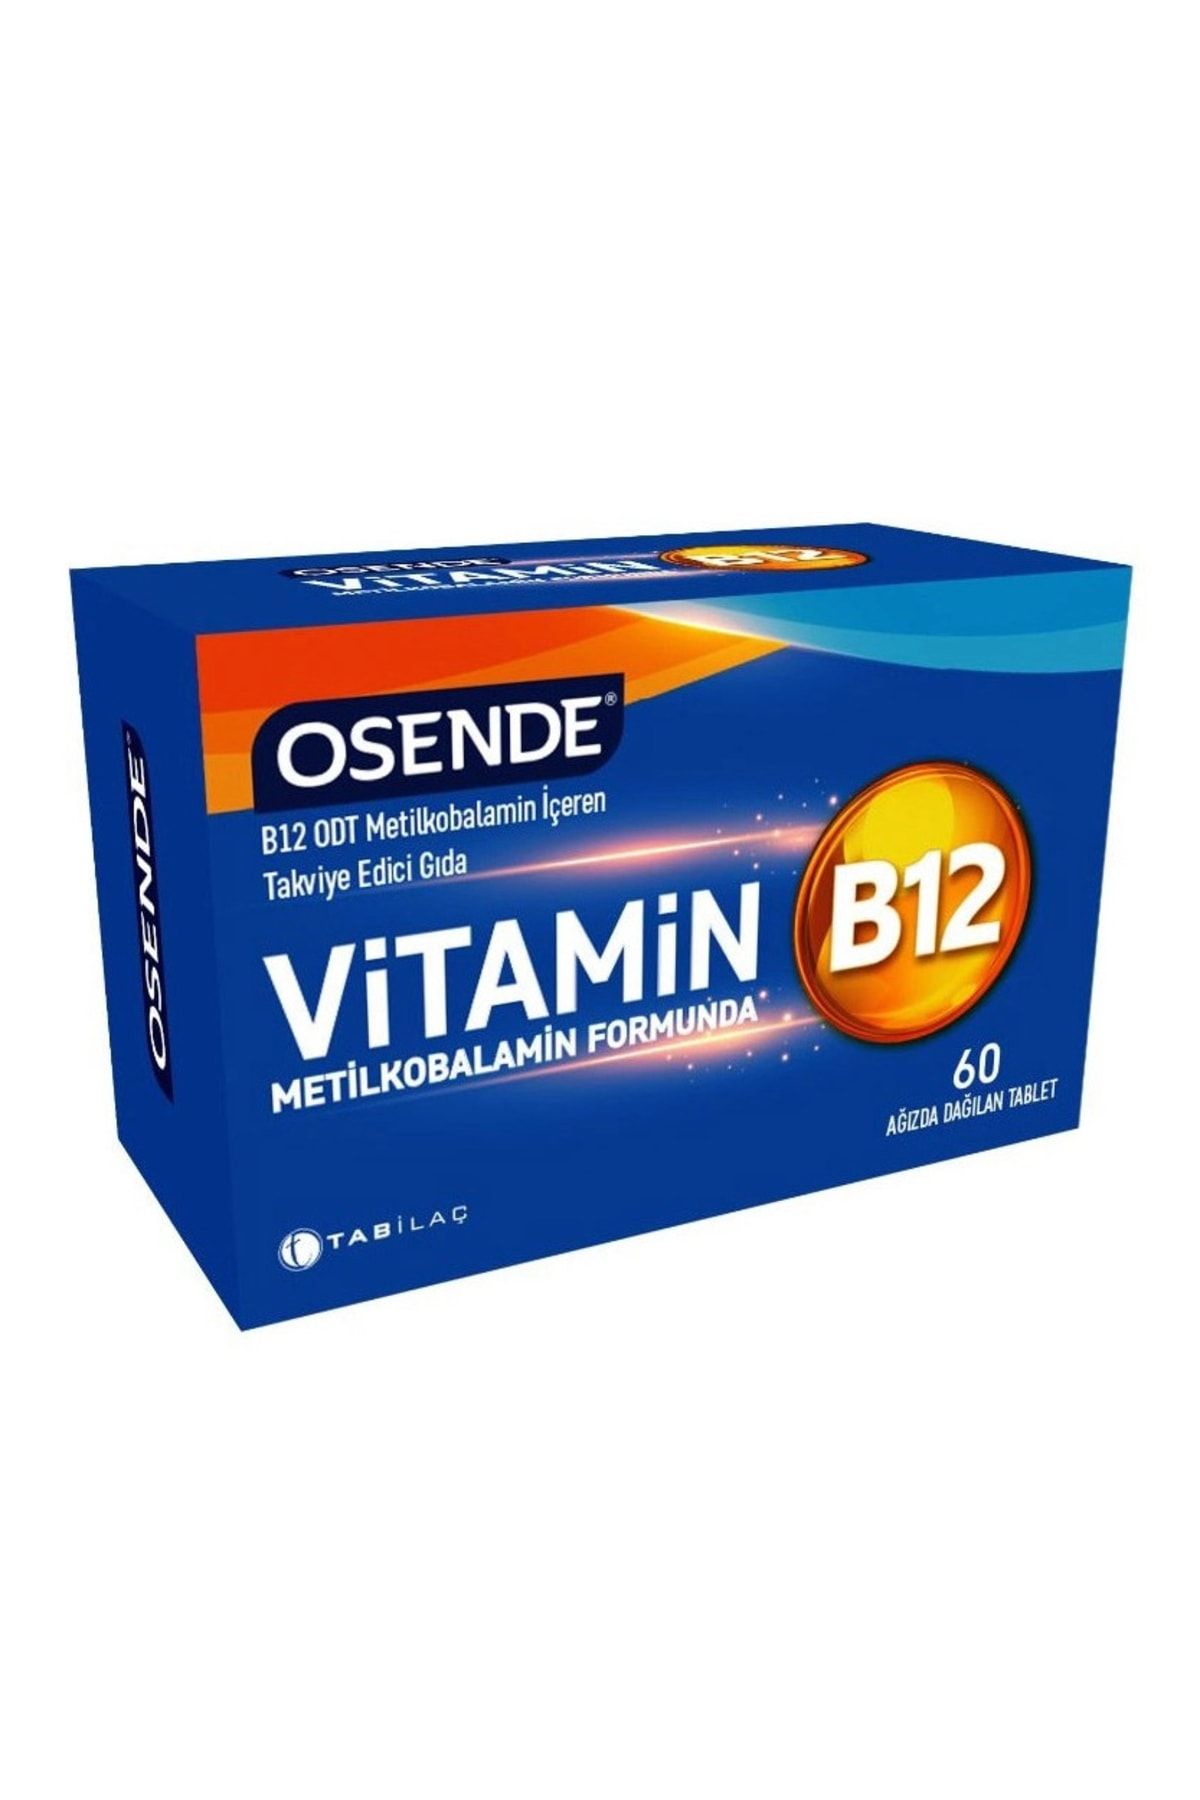 Tab İlaç Osende Metilkobalamin B12 Vitamini 60 Tablet